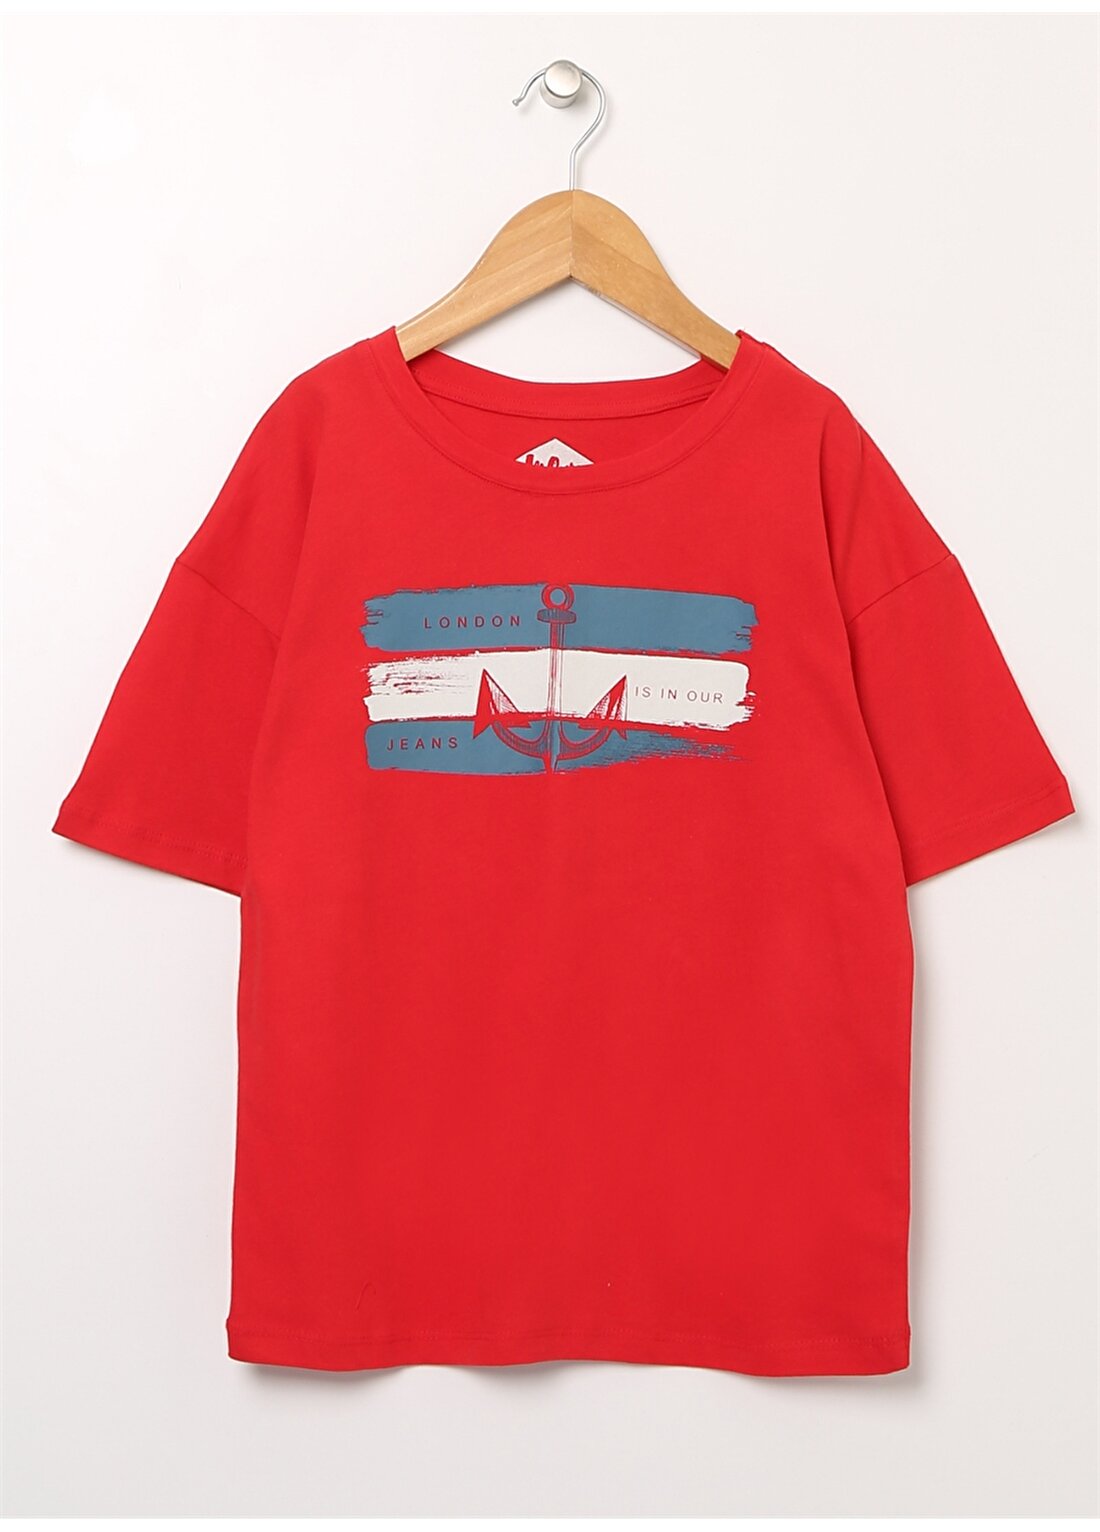 Lee Cooper Baskılı Kırmızı Erkek Çocuk T-Shirt 222 LCB 242007 LONDON KIRMIZI